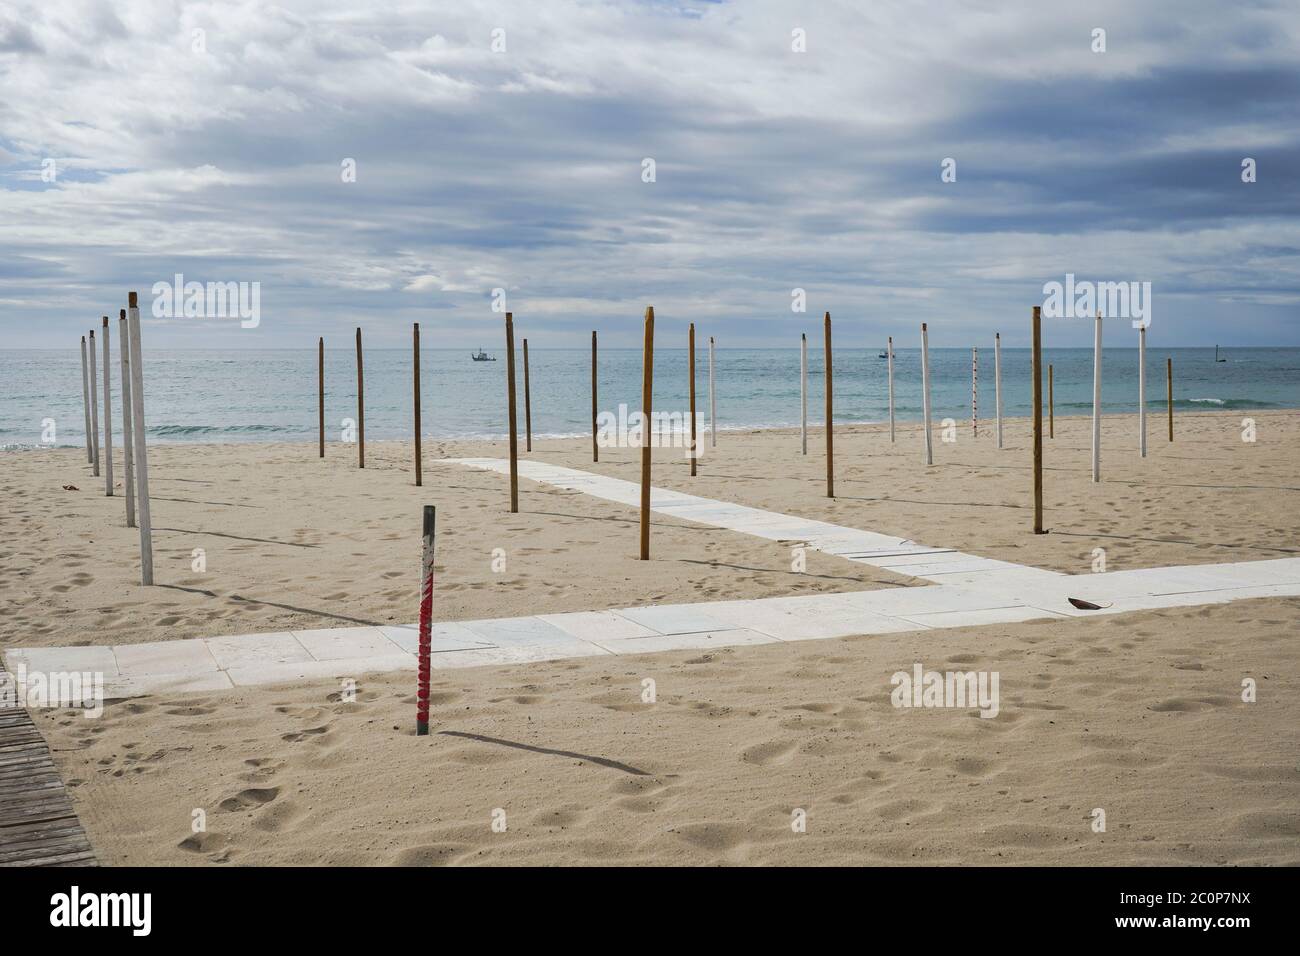 Spiaggia vuota nel giugno 2020 a causa delle restrizioni di Covid 19, Fuengirola, Costa del sol, Spagna Foto Stock